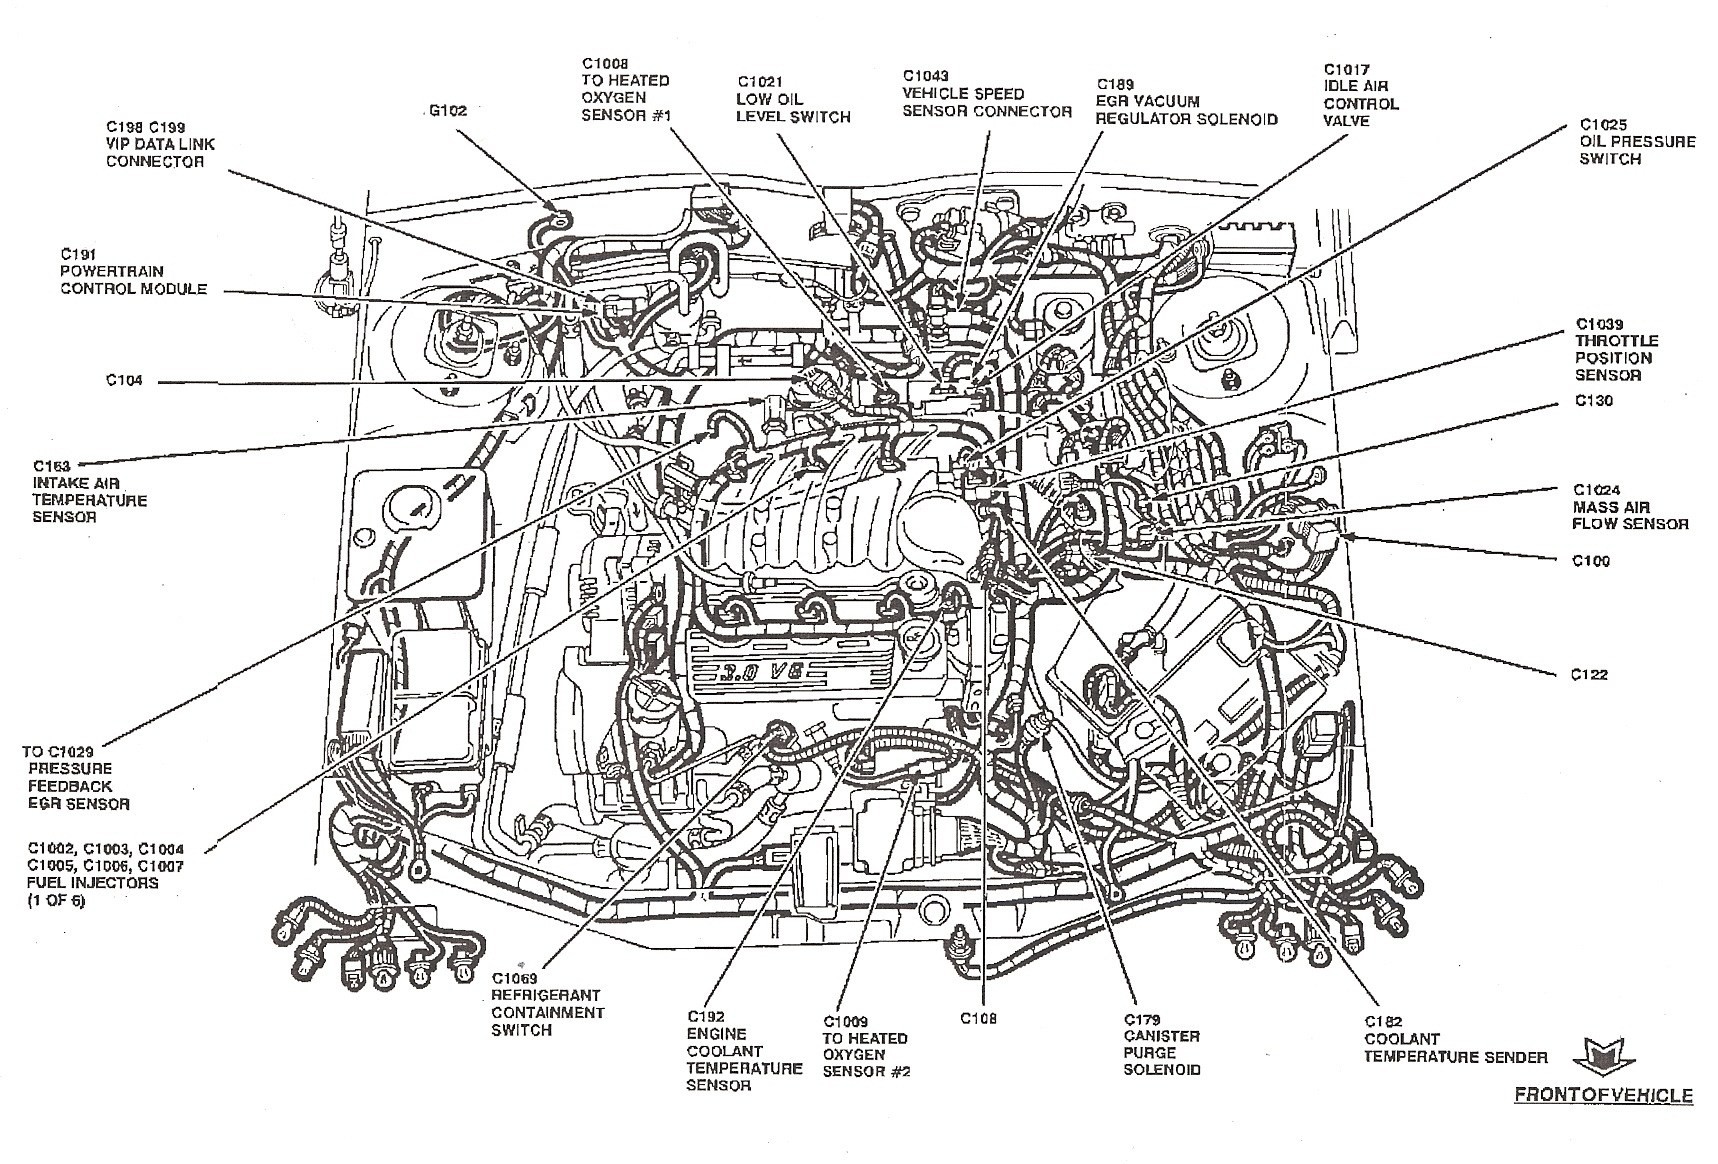 2004 ford Taurus Engine Diagram Fuel Line Diagram ford Taurus Fuel Line Diagram ford F150 Fuel Of 2004 ford Taurus Engine Diagram